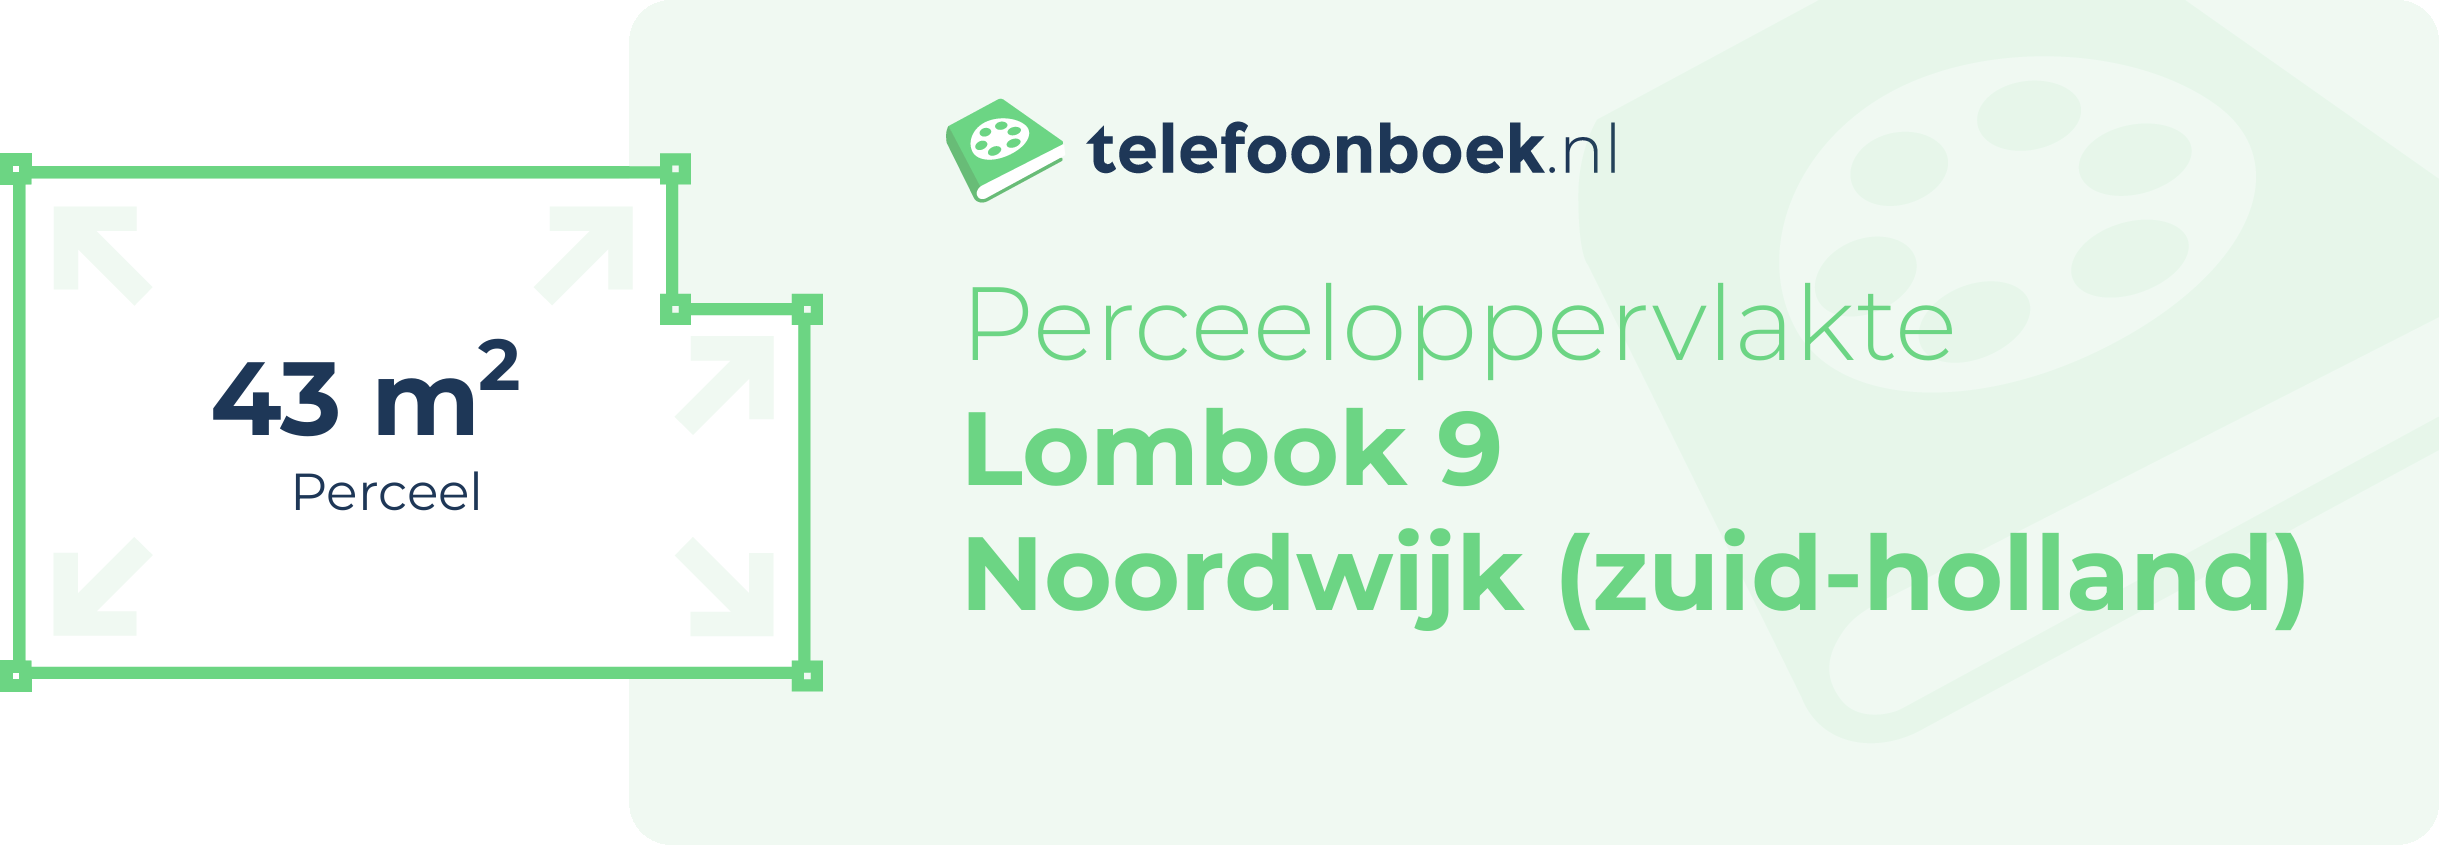 Perceeloppervlakte Lombok 9 Noordwijk (Zuid-Holland)